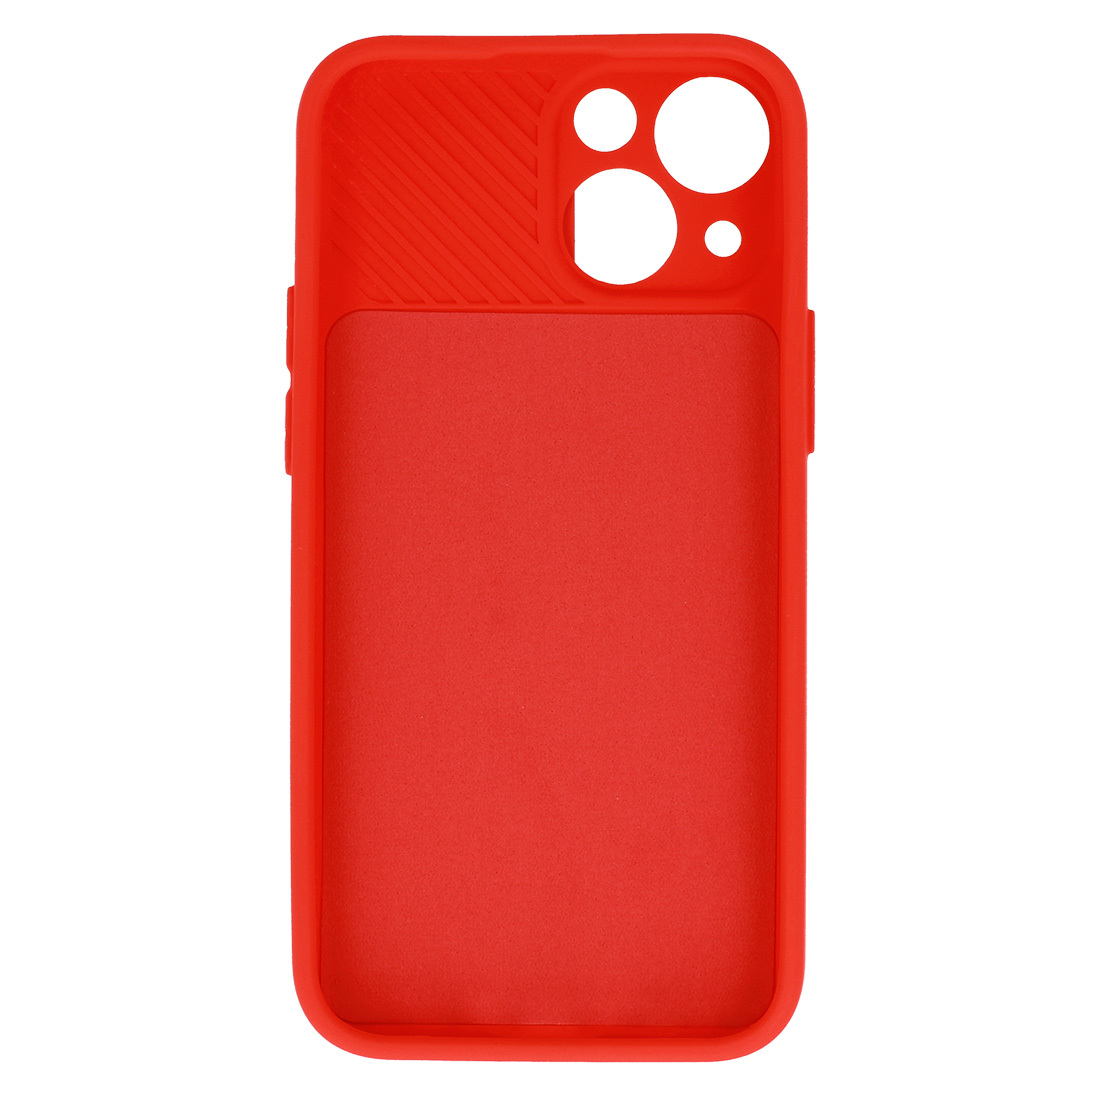 Pokrowiec etui z elastycznego TPU Camshield Soft Case czerwone APPLE iPhone 7 / 5